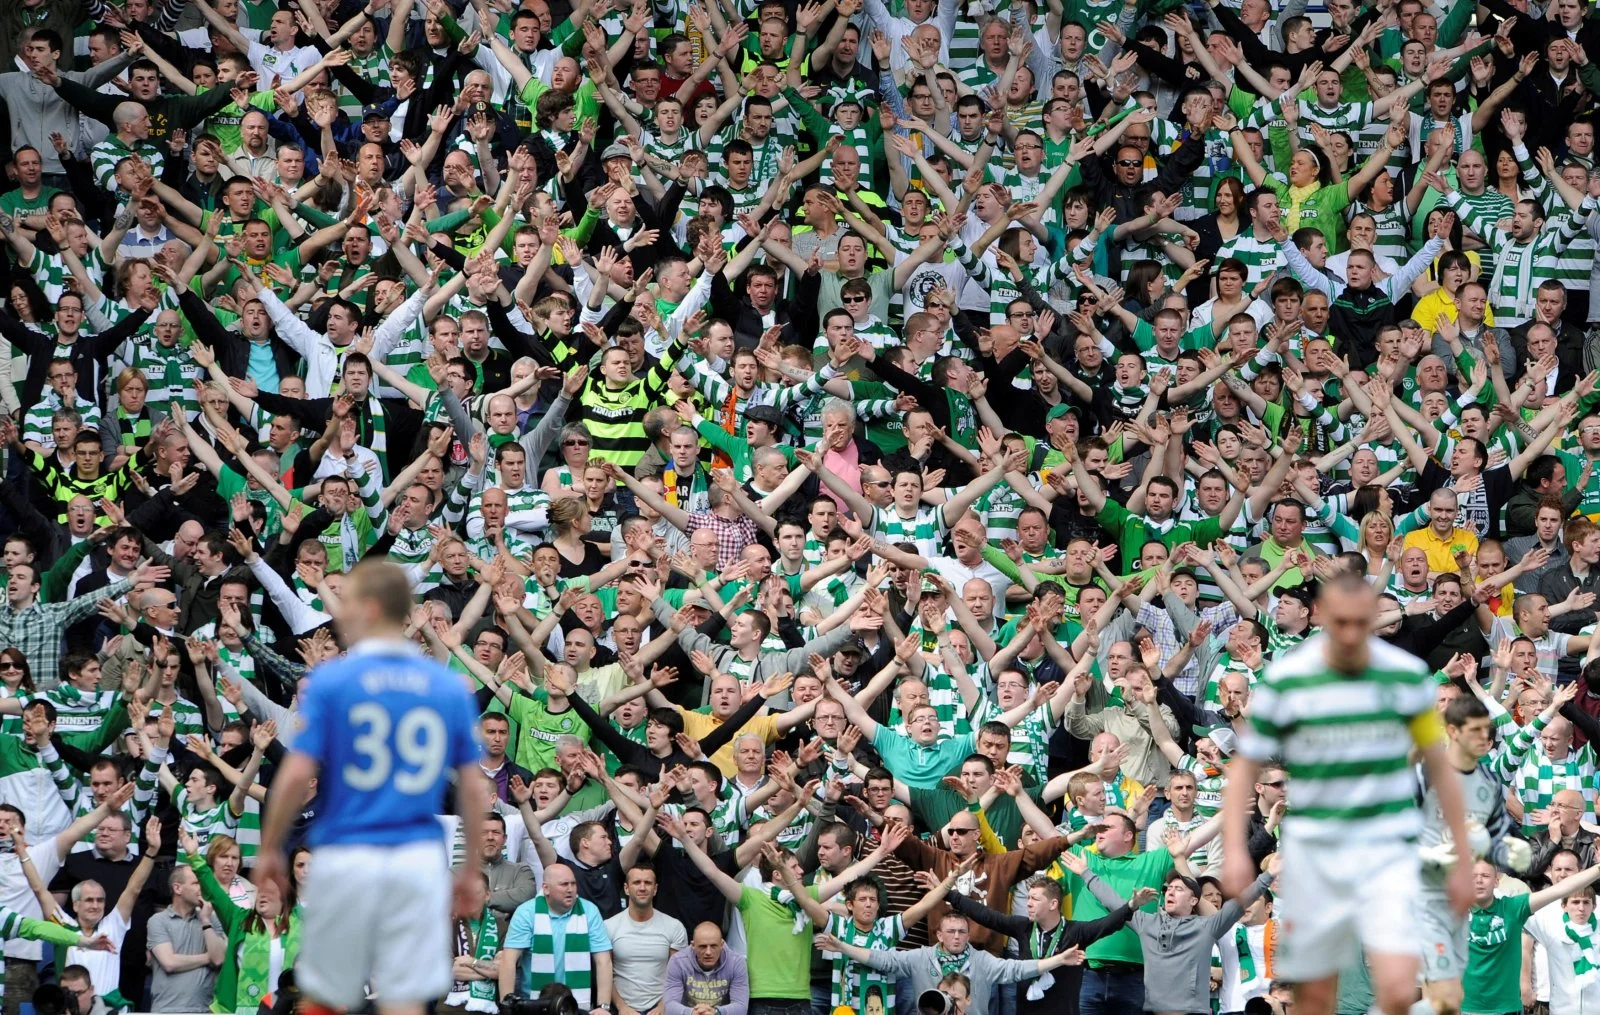 celtic fans celebrating